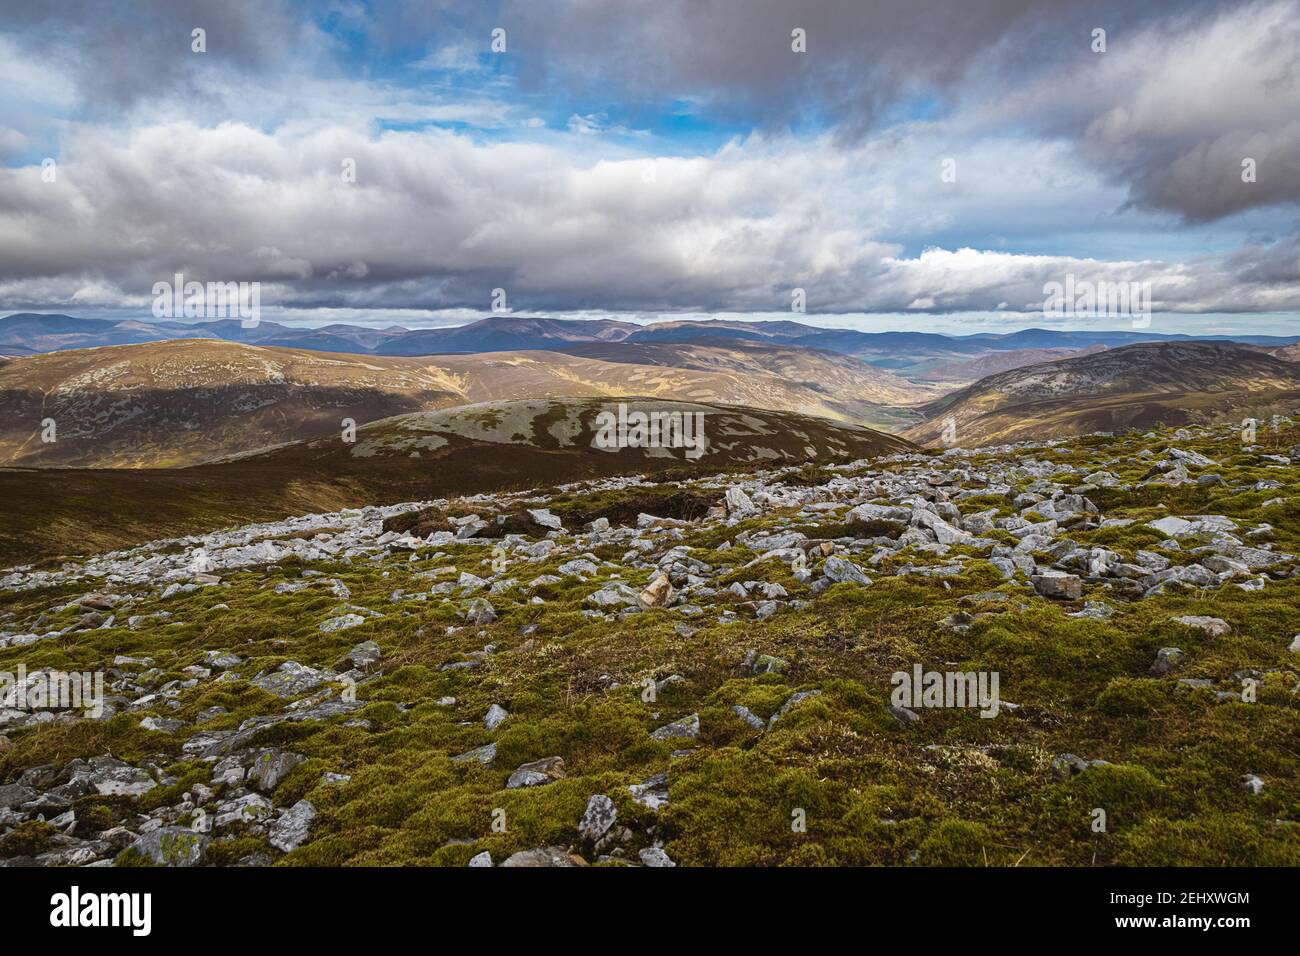 Vista panoramica sulle montagne con spazio aperto e soffici nuvole bianche all'orizzonte. Estate al Cairngorm Nationl Park nelle Highlands scozzesi. Foto Stock